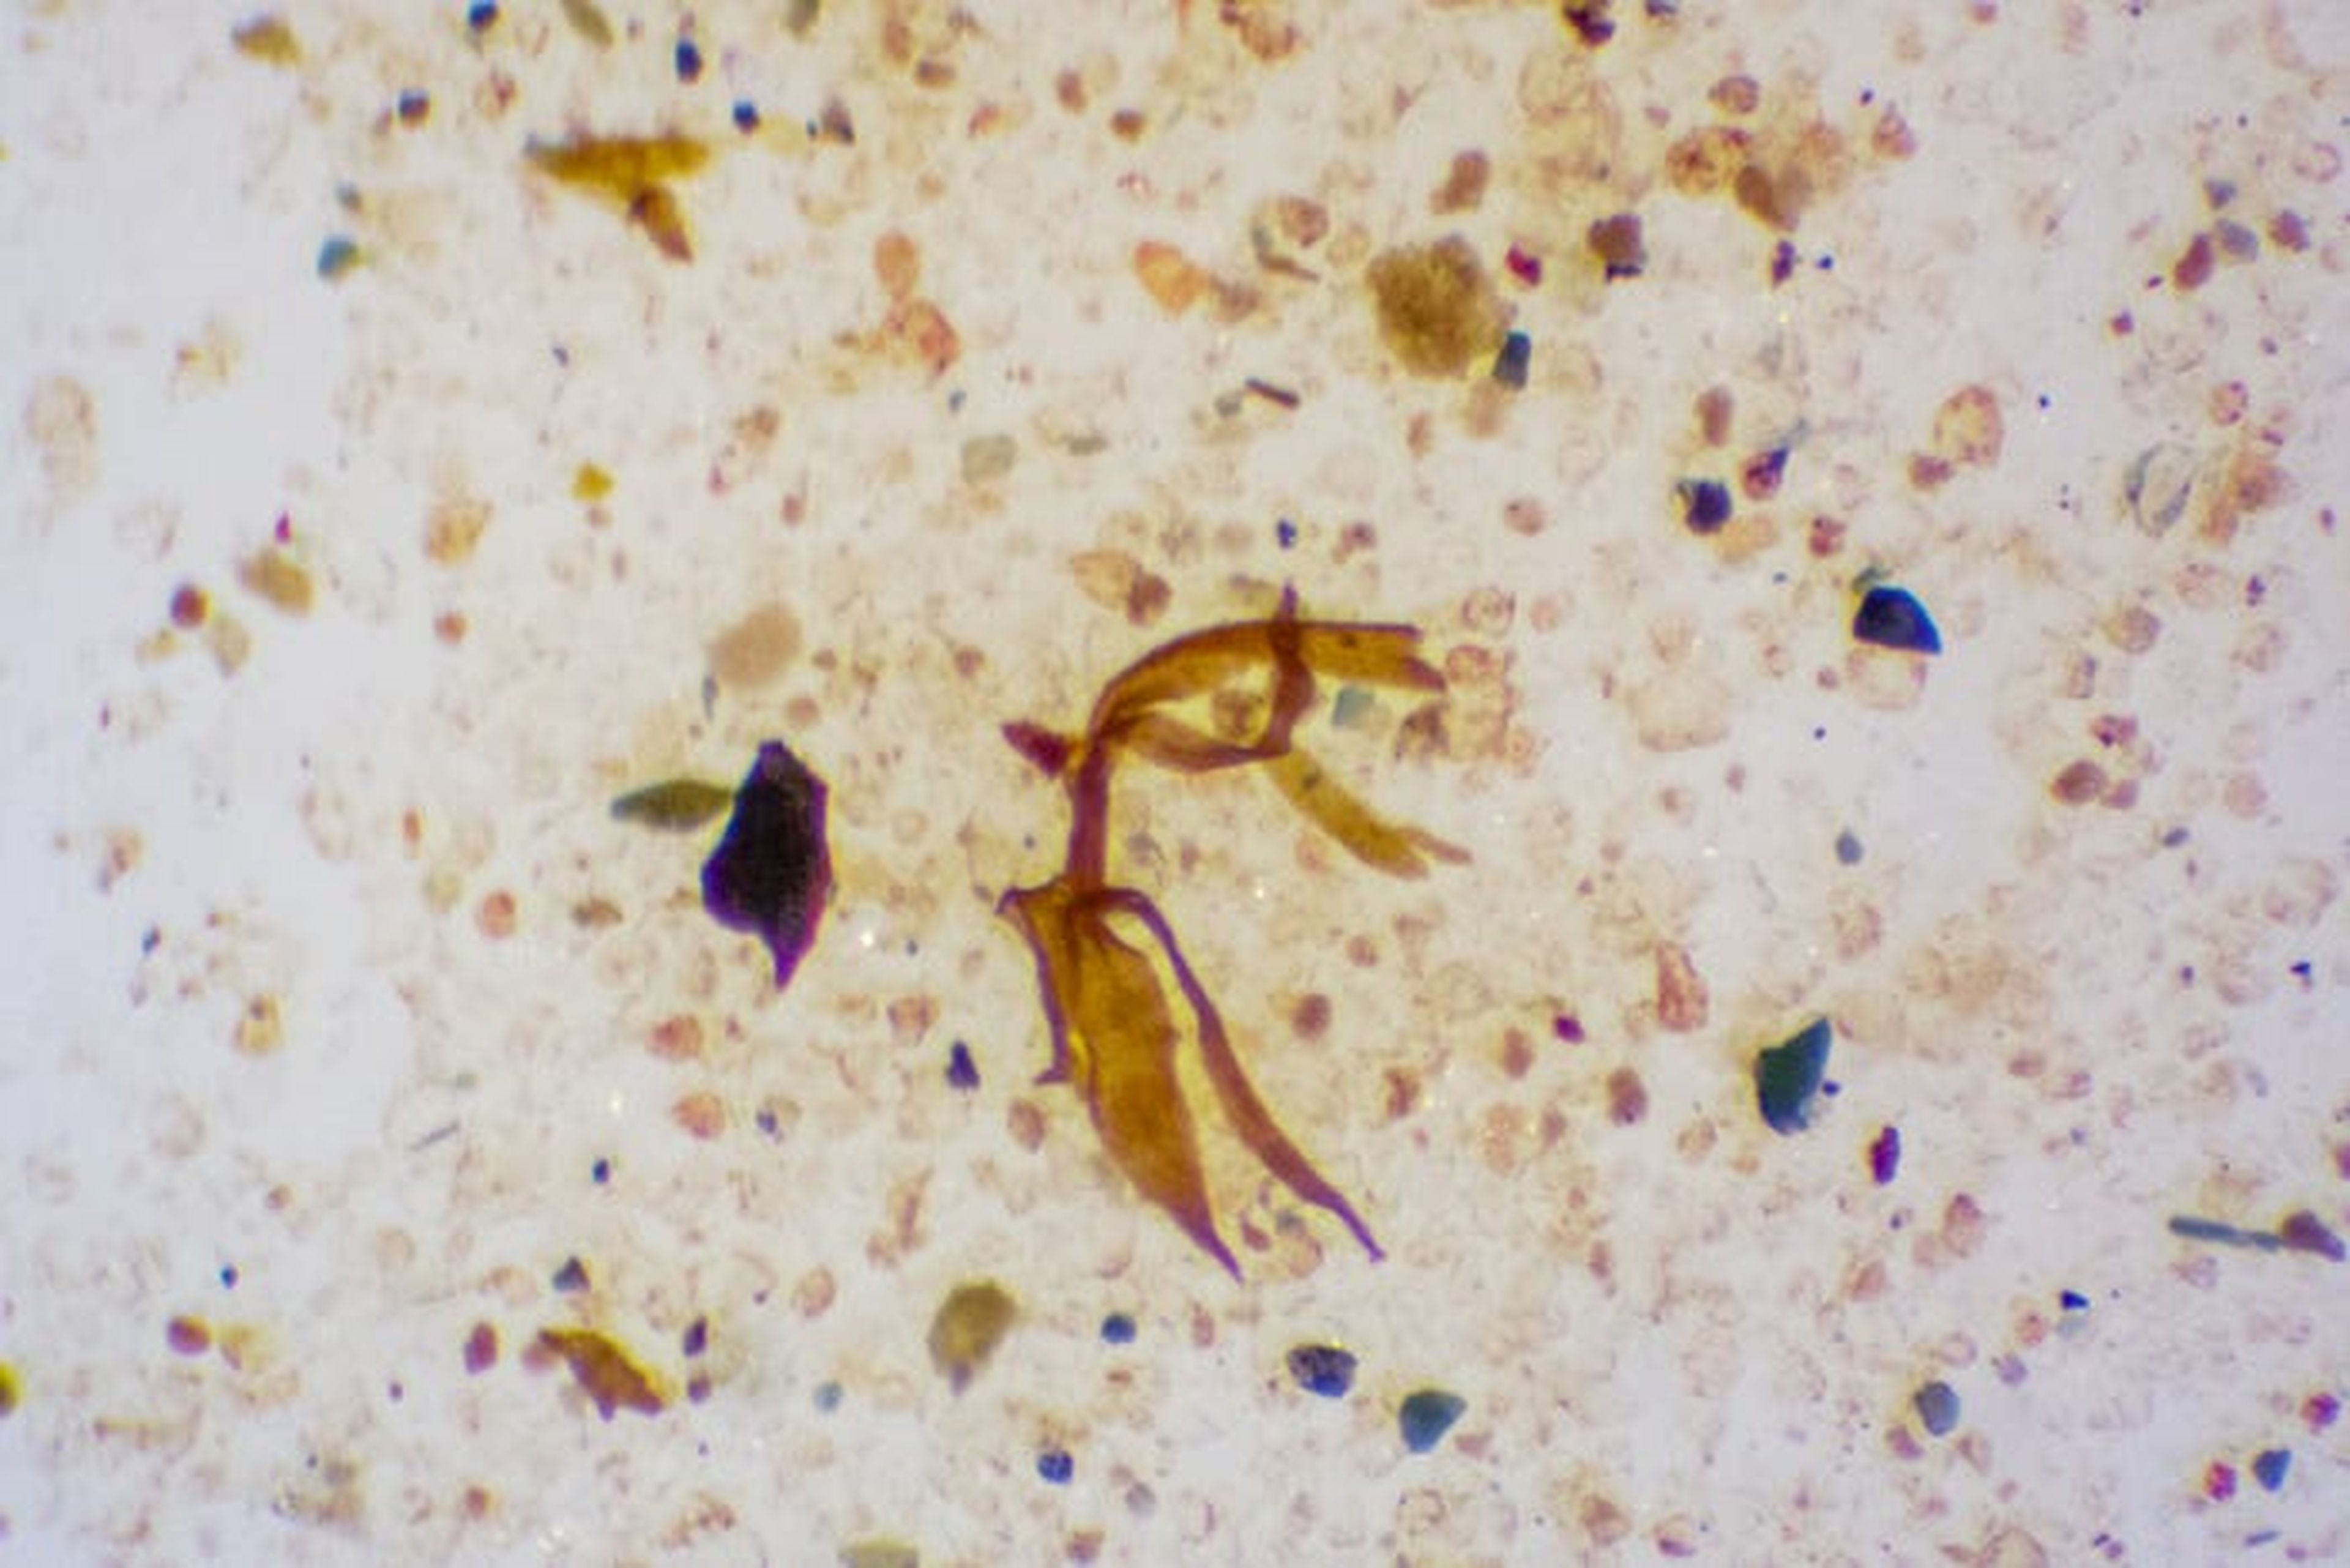 Imagen tomada con microscopio de las plantas prehistóricas congeladas en la Antártida